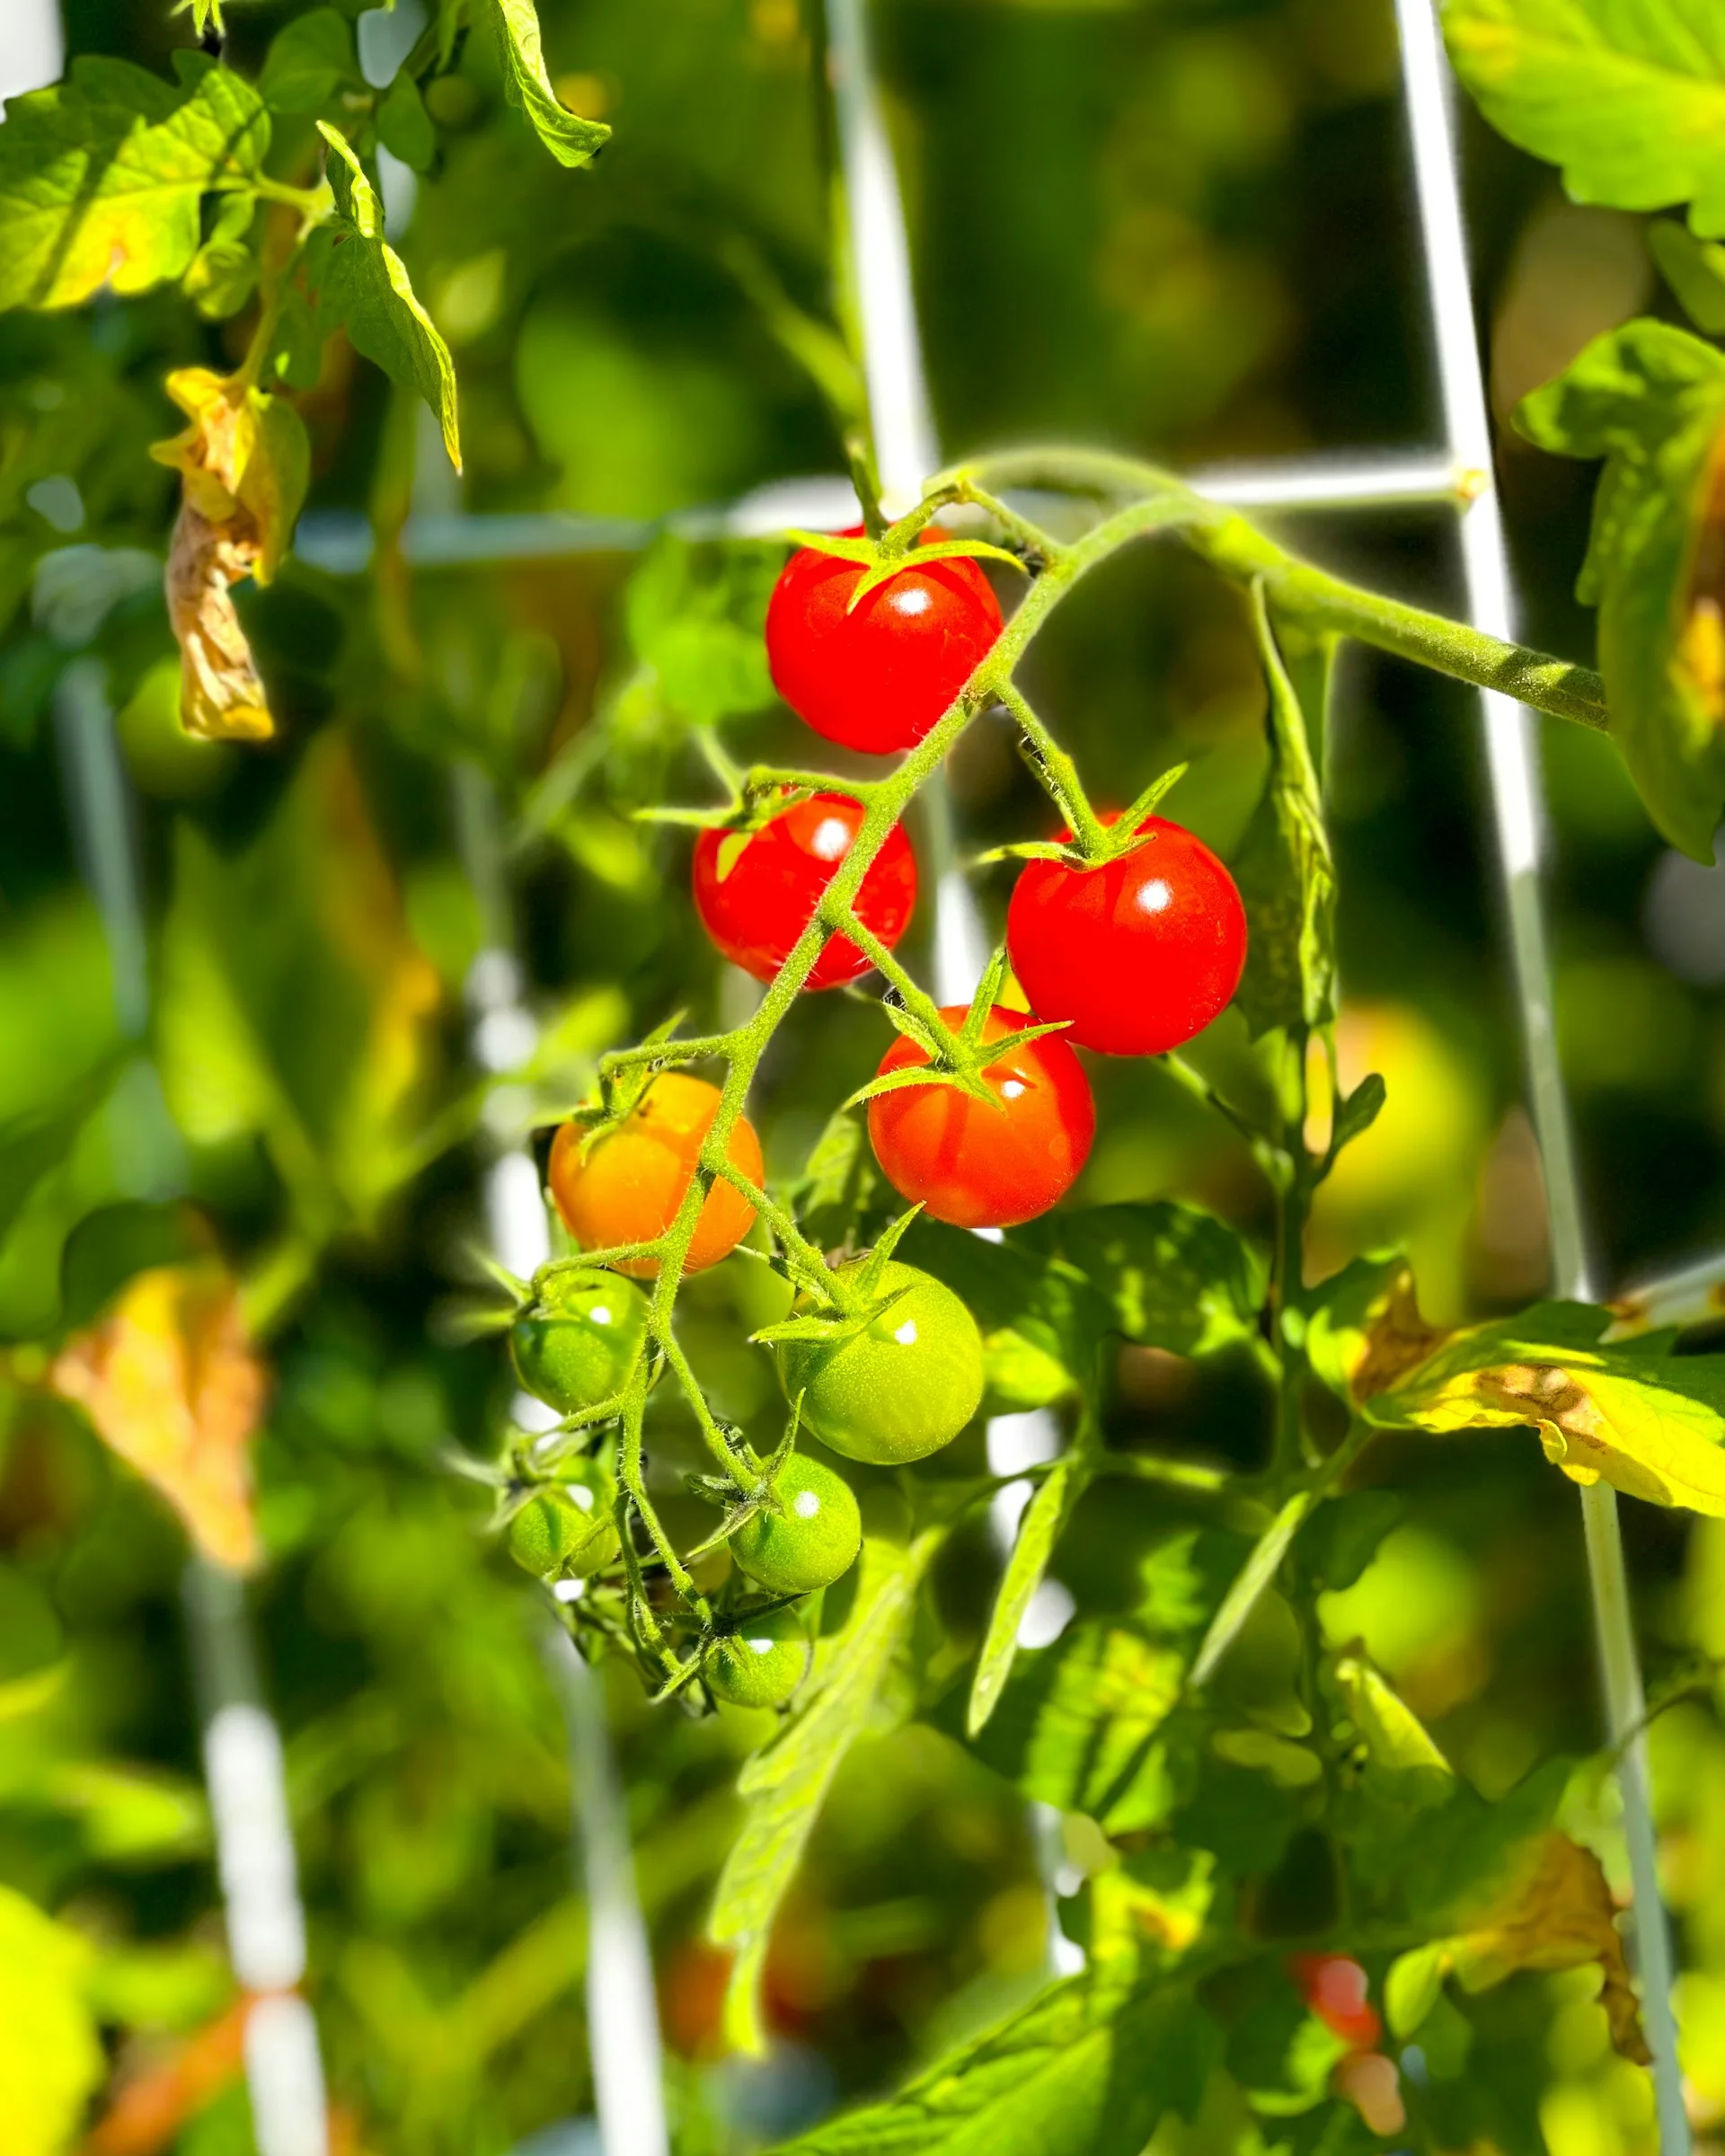 Γιατί δεν πρέπει να φυτεύεις αγγούρια και ντομάτες μαζί στον κήπο